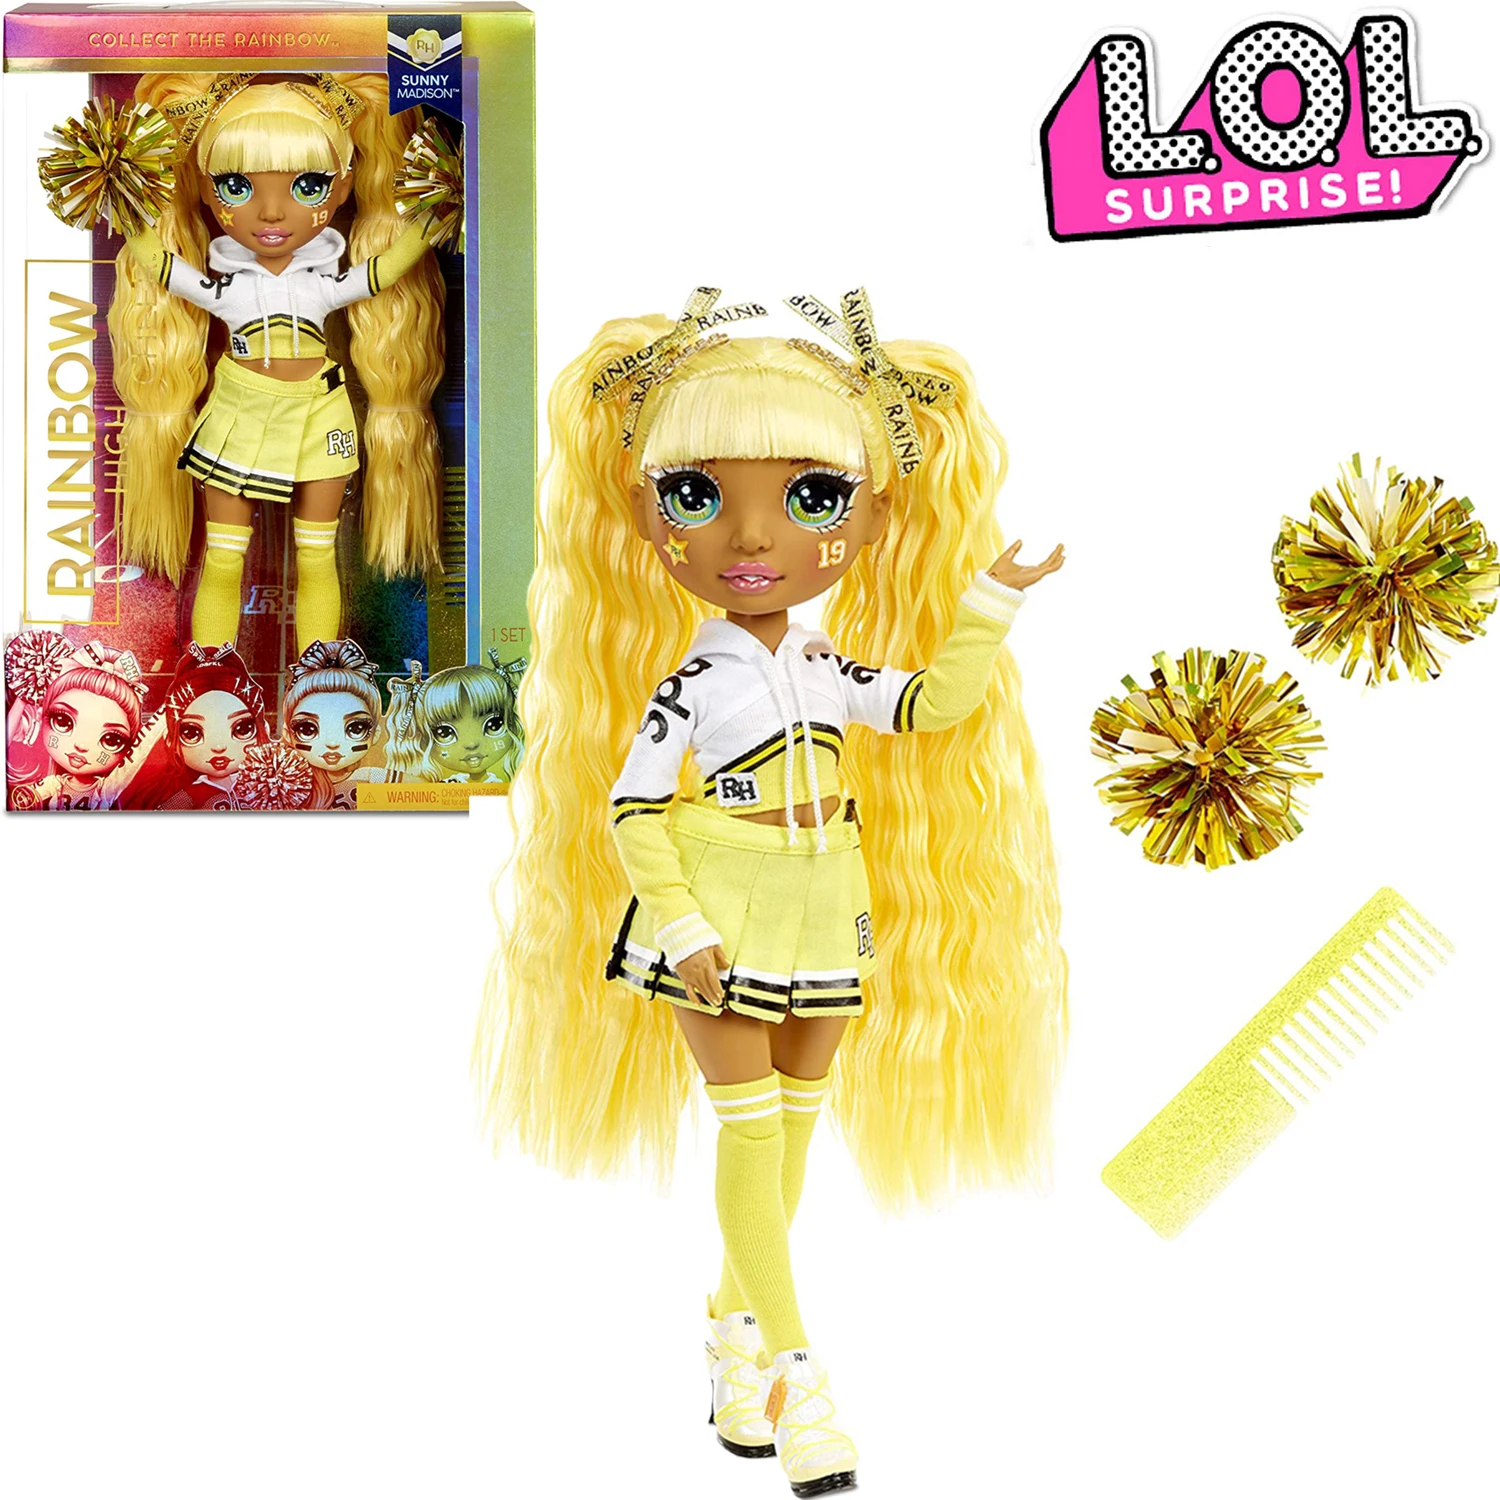 

11 дюймов радужная высокая радуга Sunny Madison желтая модная кукла чарлидинг Lol сюрприз куклы игрушки для девочек детские игрушки